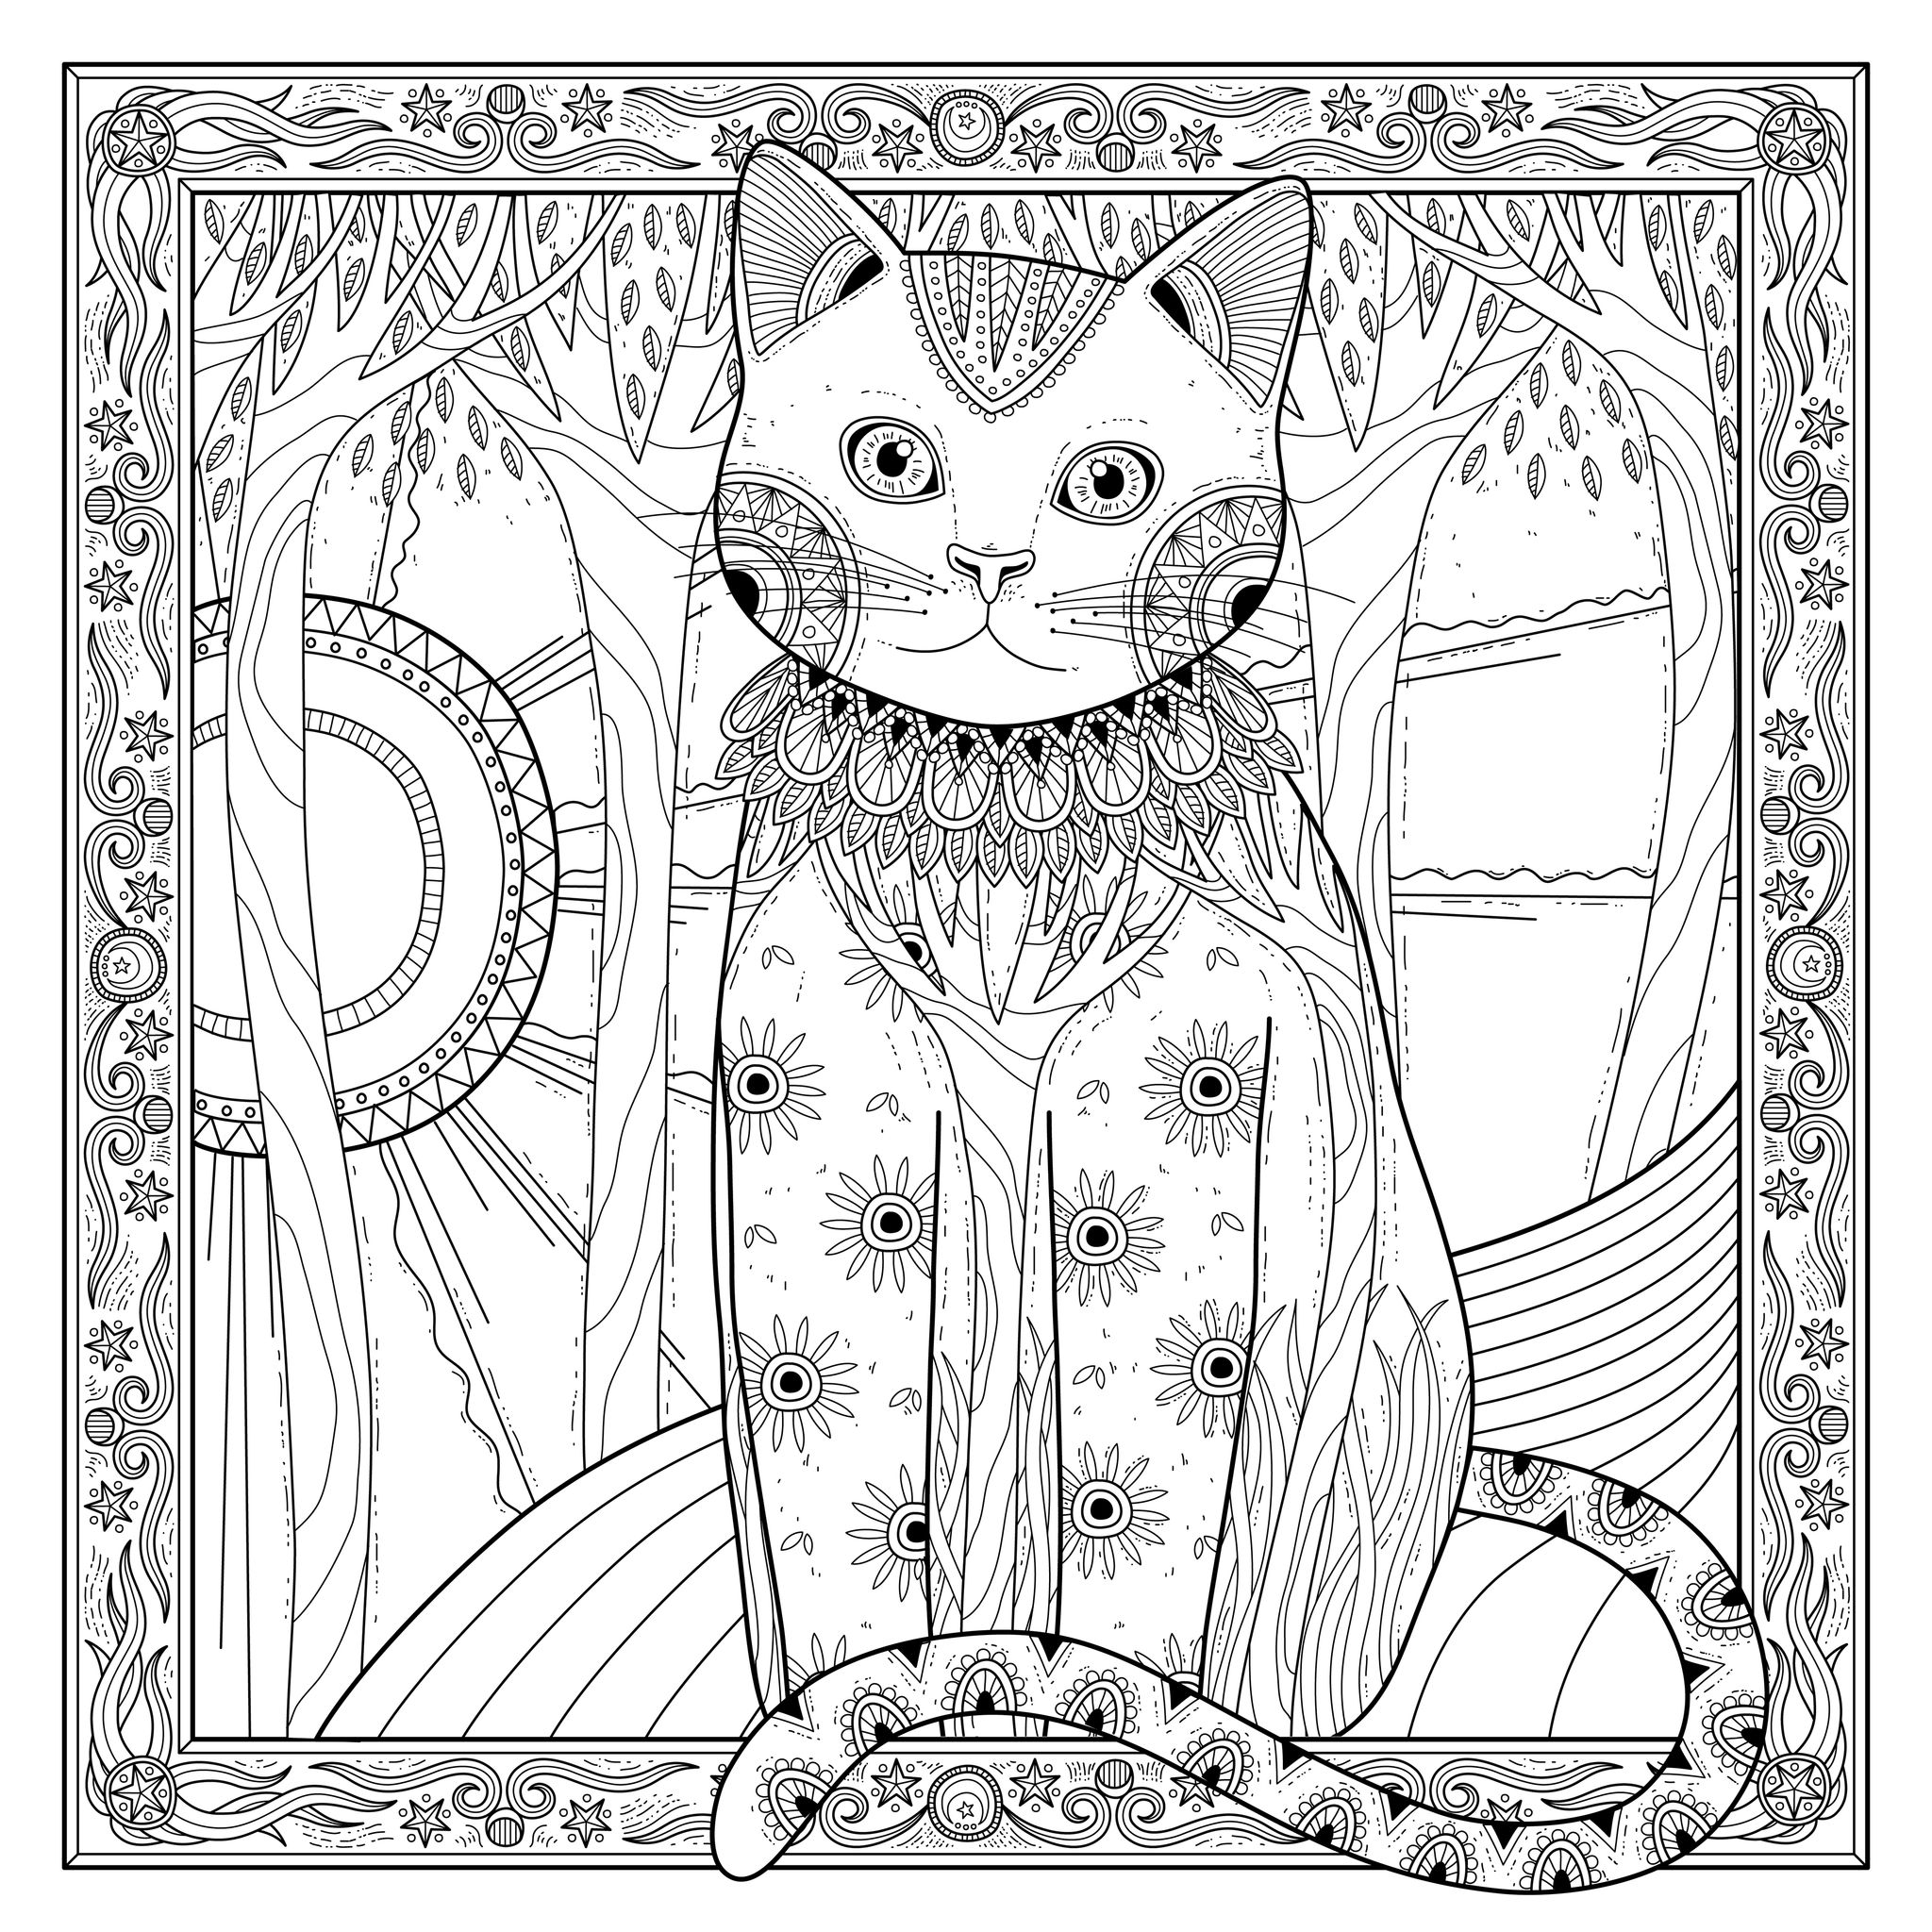 Desenho de gato elegante para colorir, com uma bonita moldura